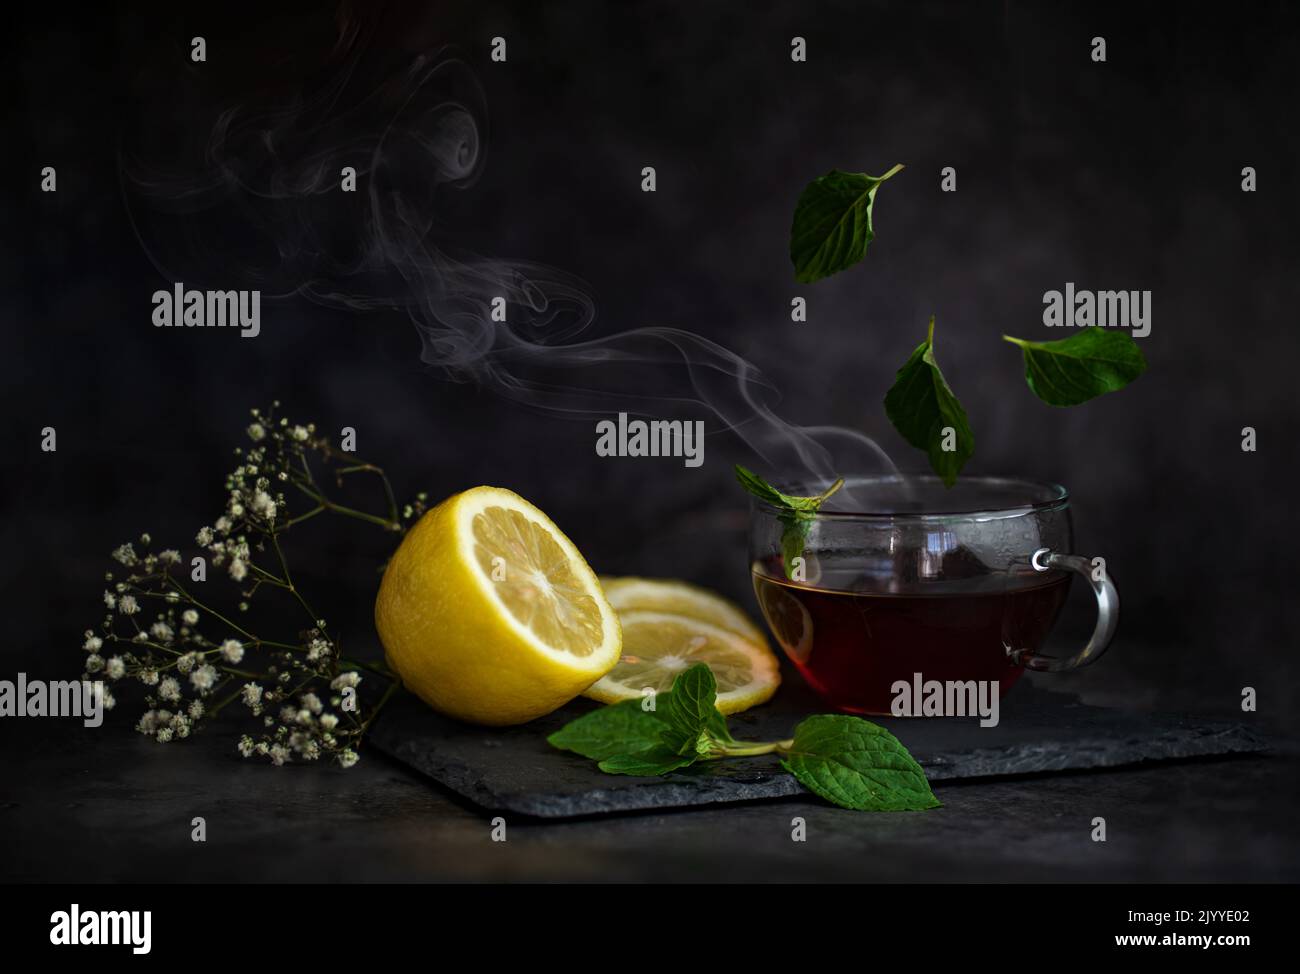 Stillleben von Beeren und Früchten auf dem Tisch auf einem dunklen Hintergrund Hochwertige Foto Stockfoto